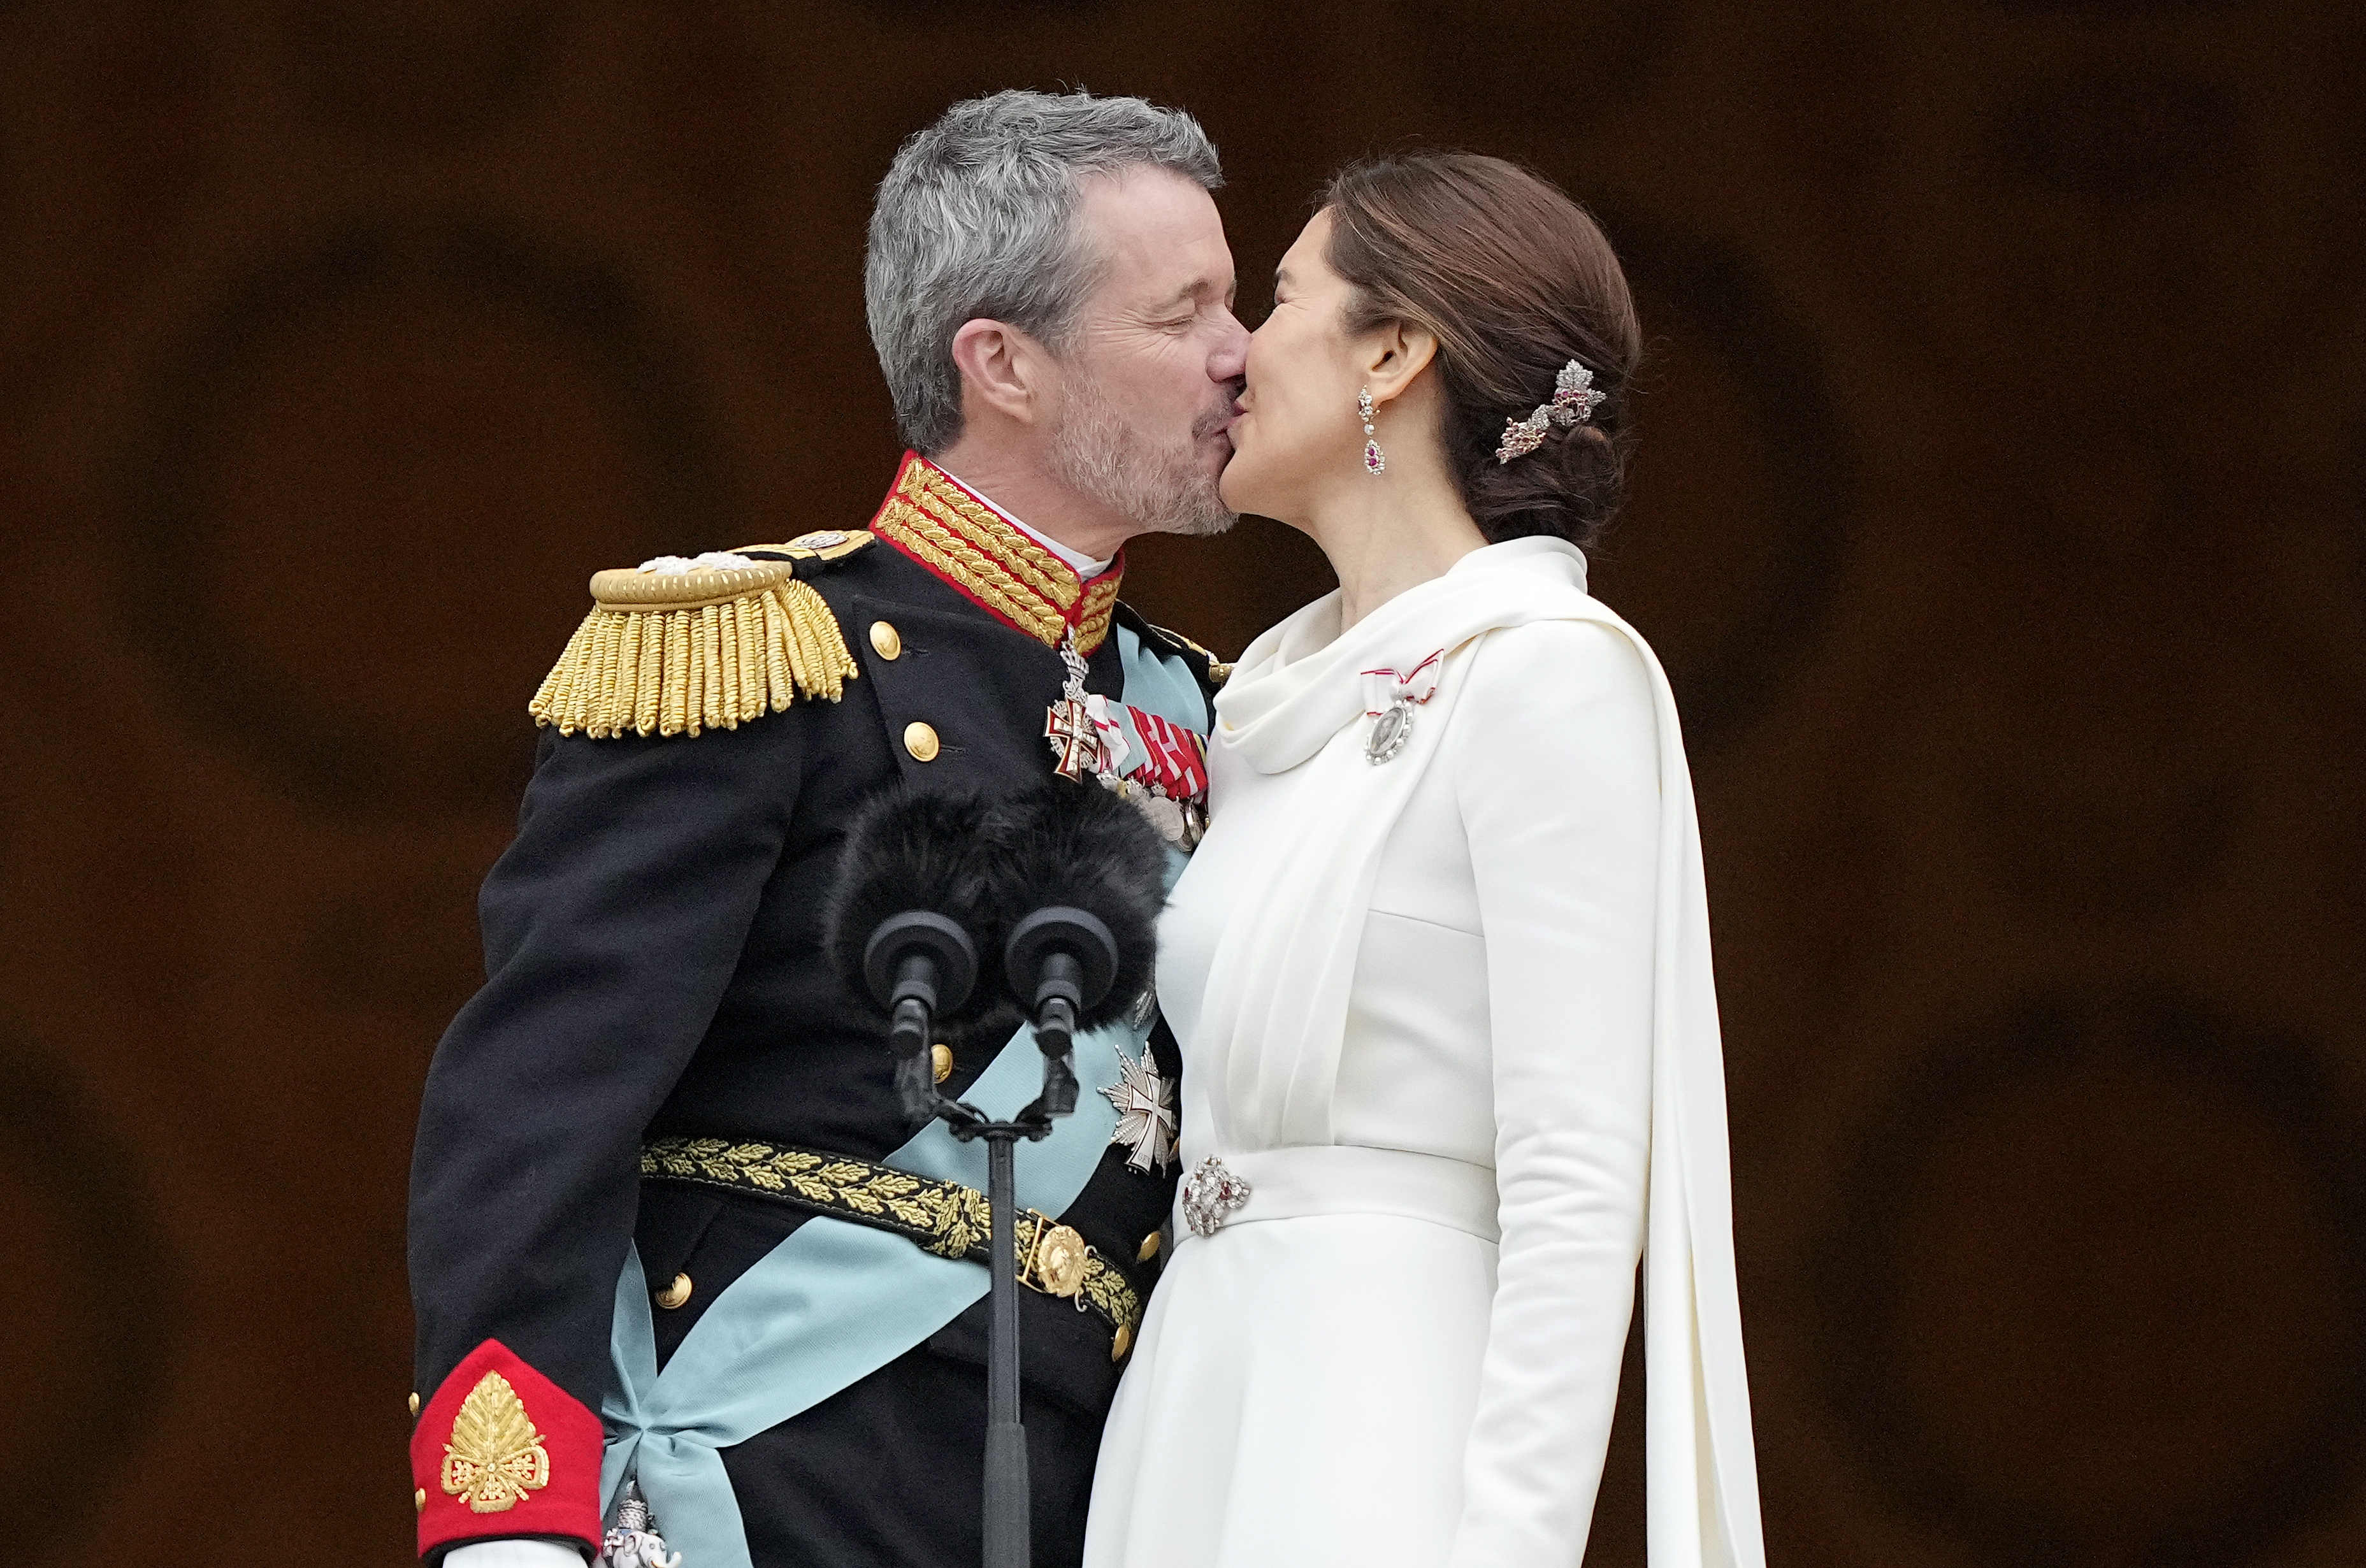 Le roi du Danemark Frederik X a embrassé aujourd'hui son épouse la reine Mary sur le balcon du palais de Christiansborg dans une démonstration publique d'affection.